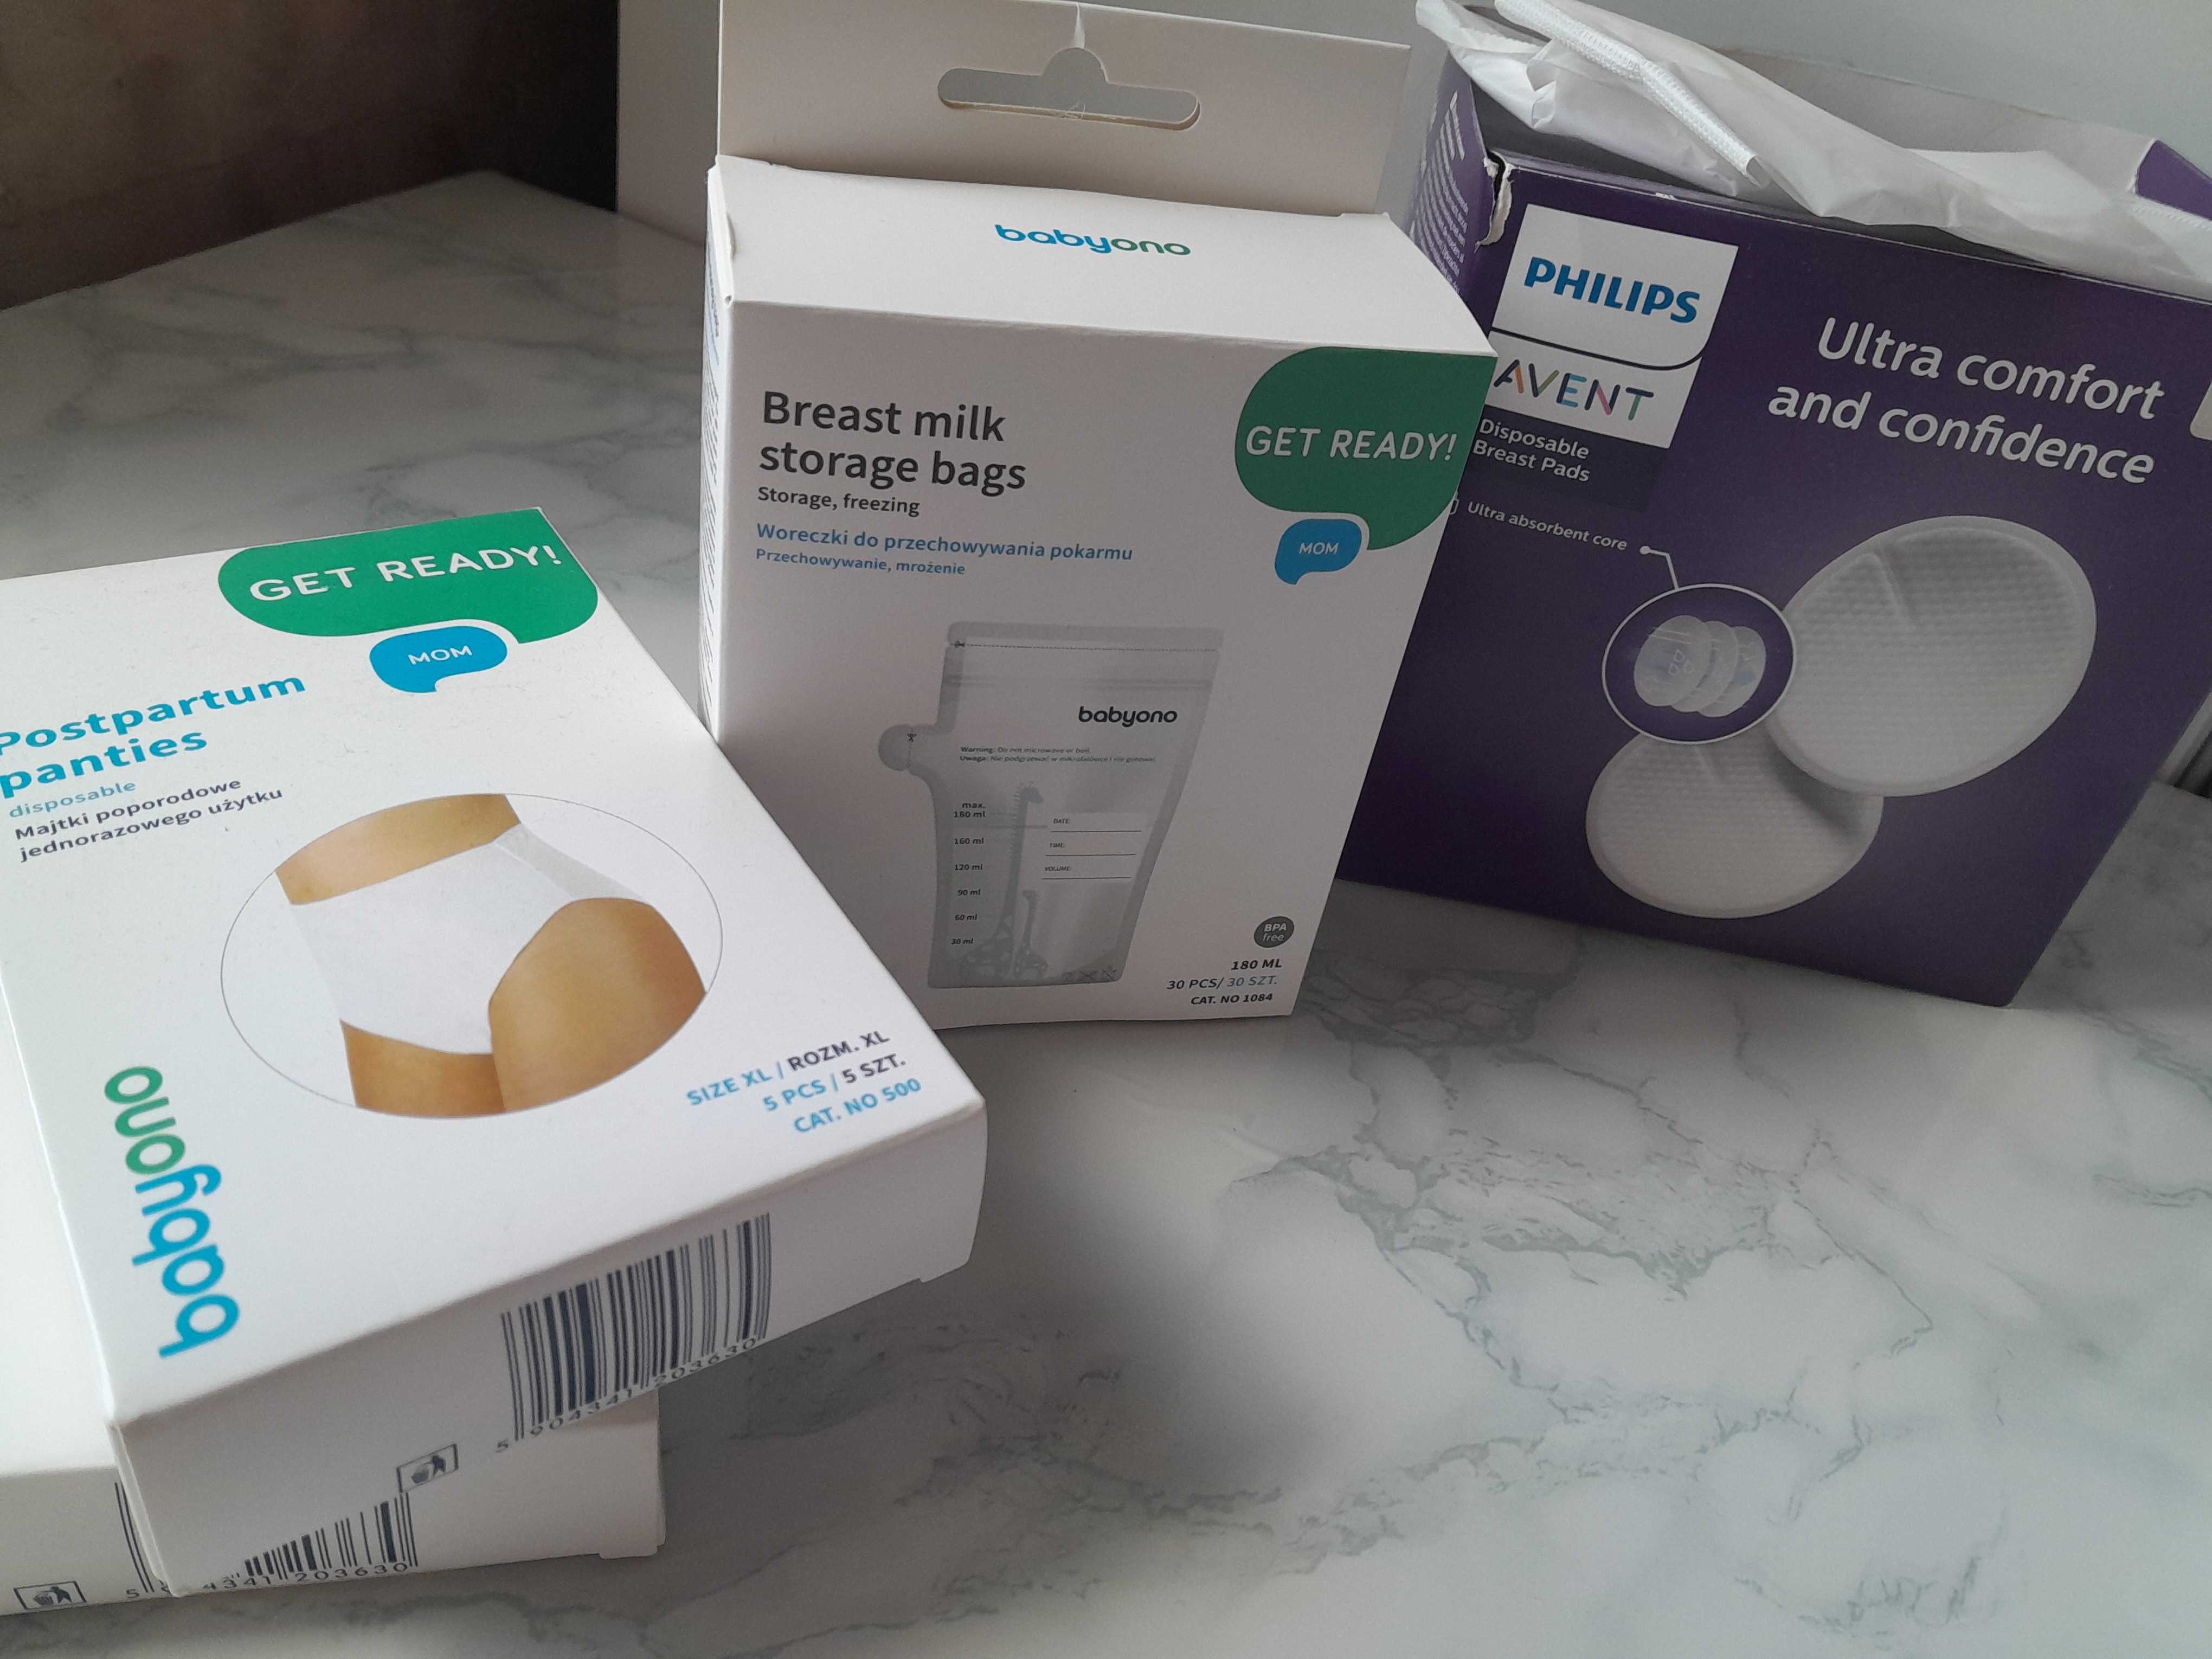 Вкладищі AVENТ, пакети для зберігання молока, трусики післяпологові